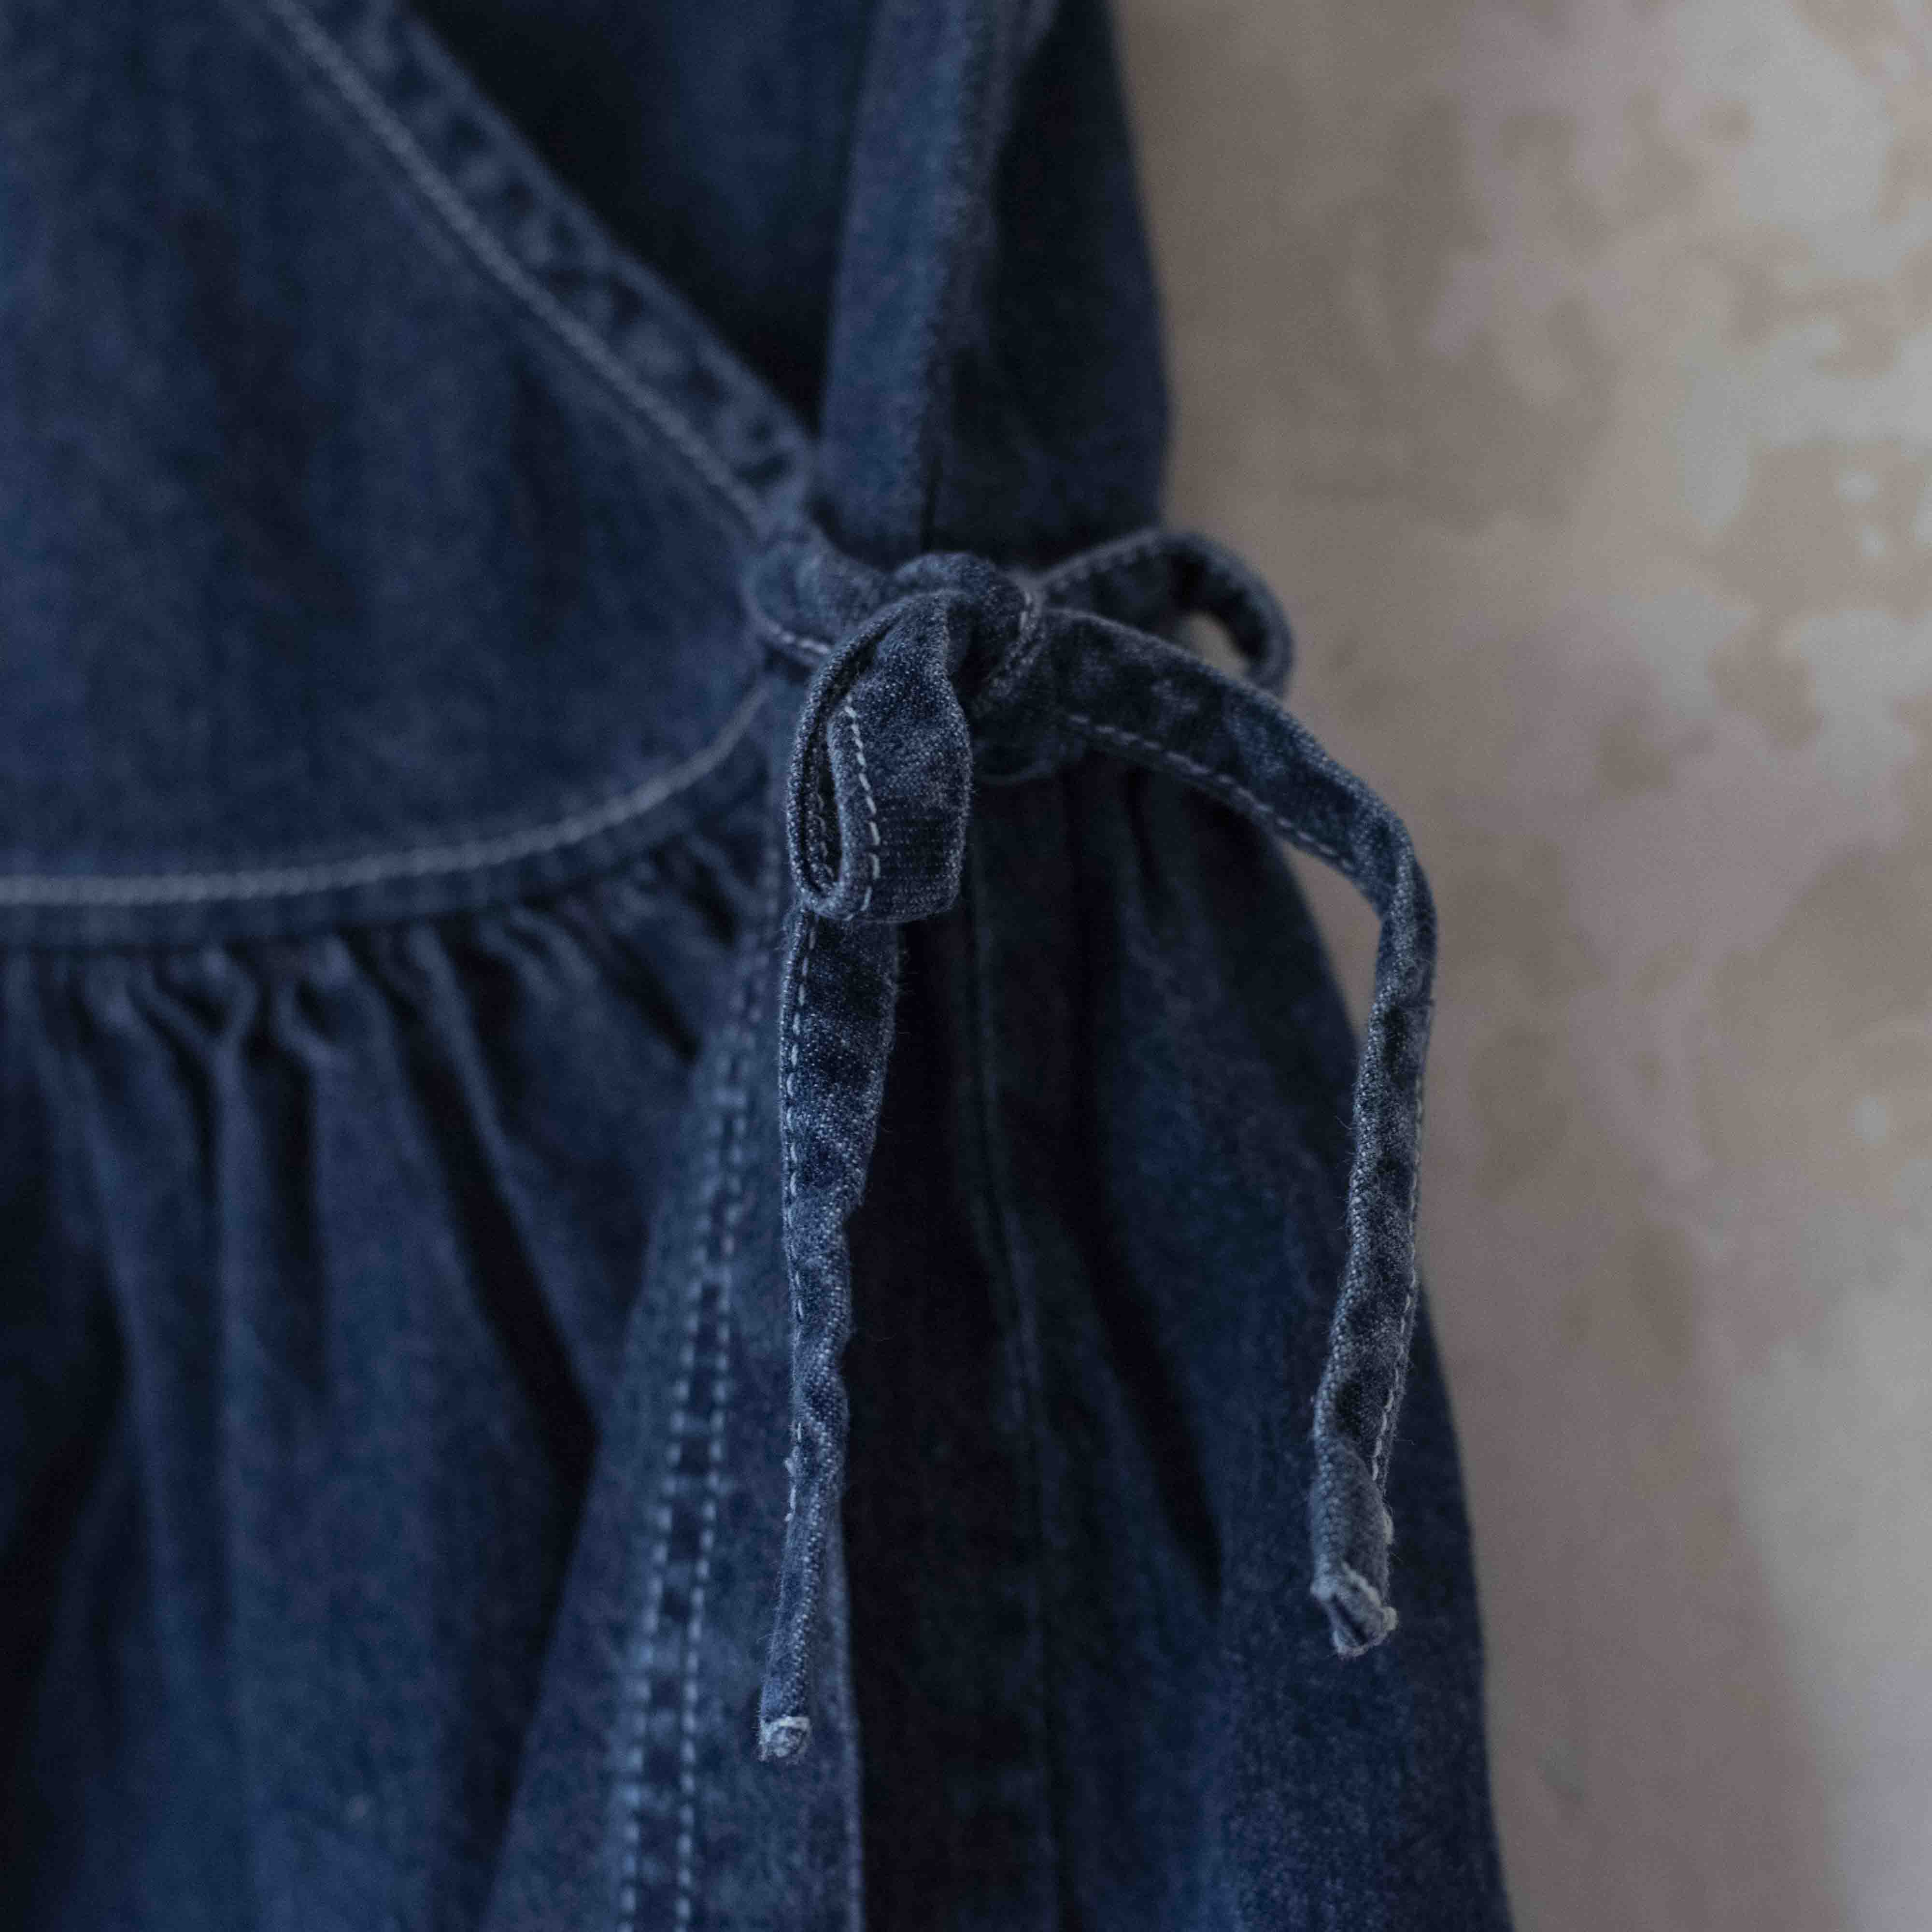 שמלת מעטפת ג׳ינס עם פרחים רקומים | 18-24 חודשים